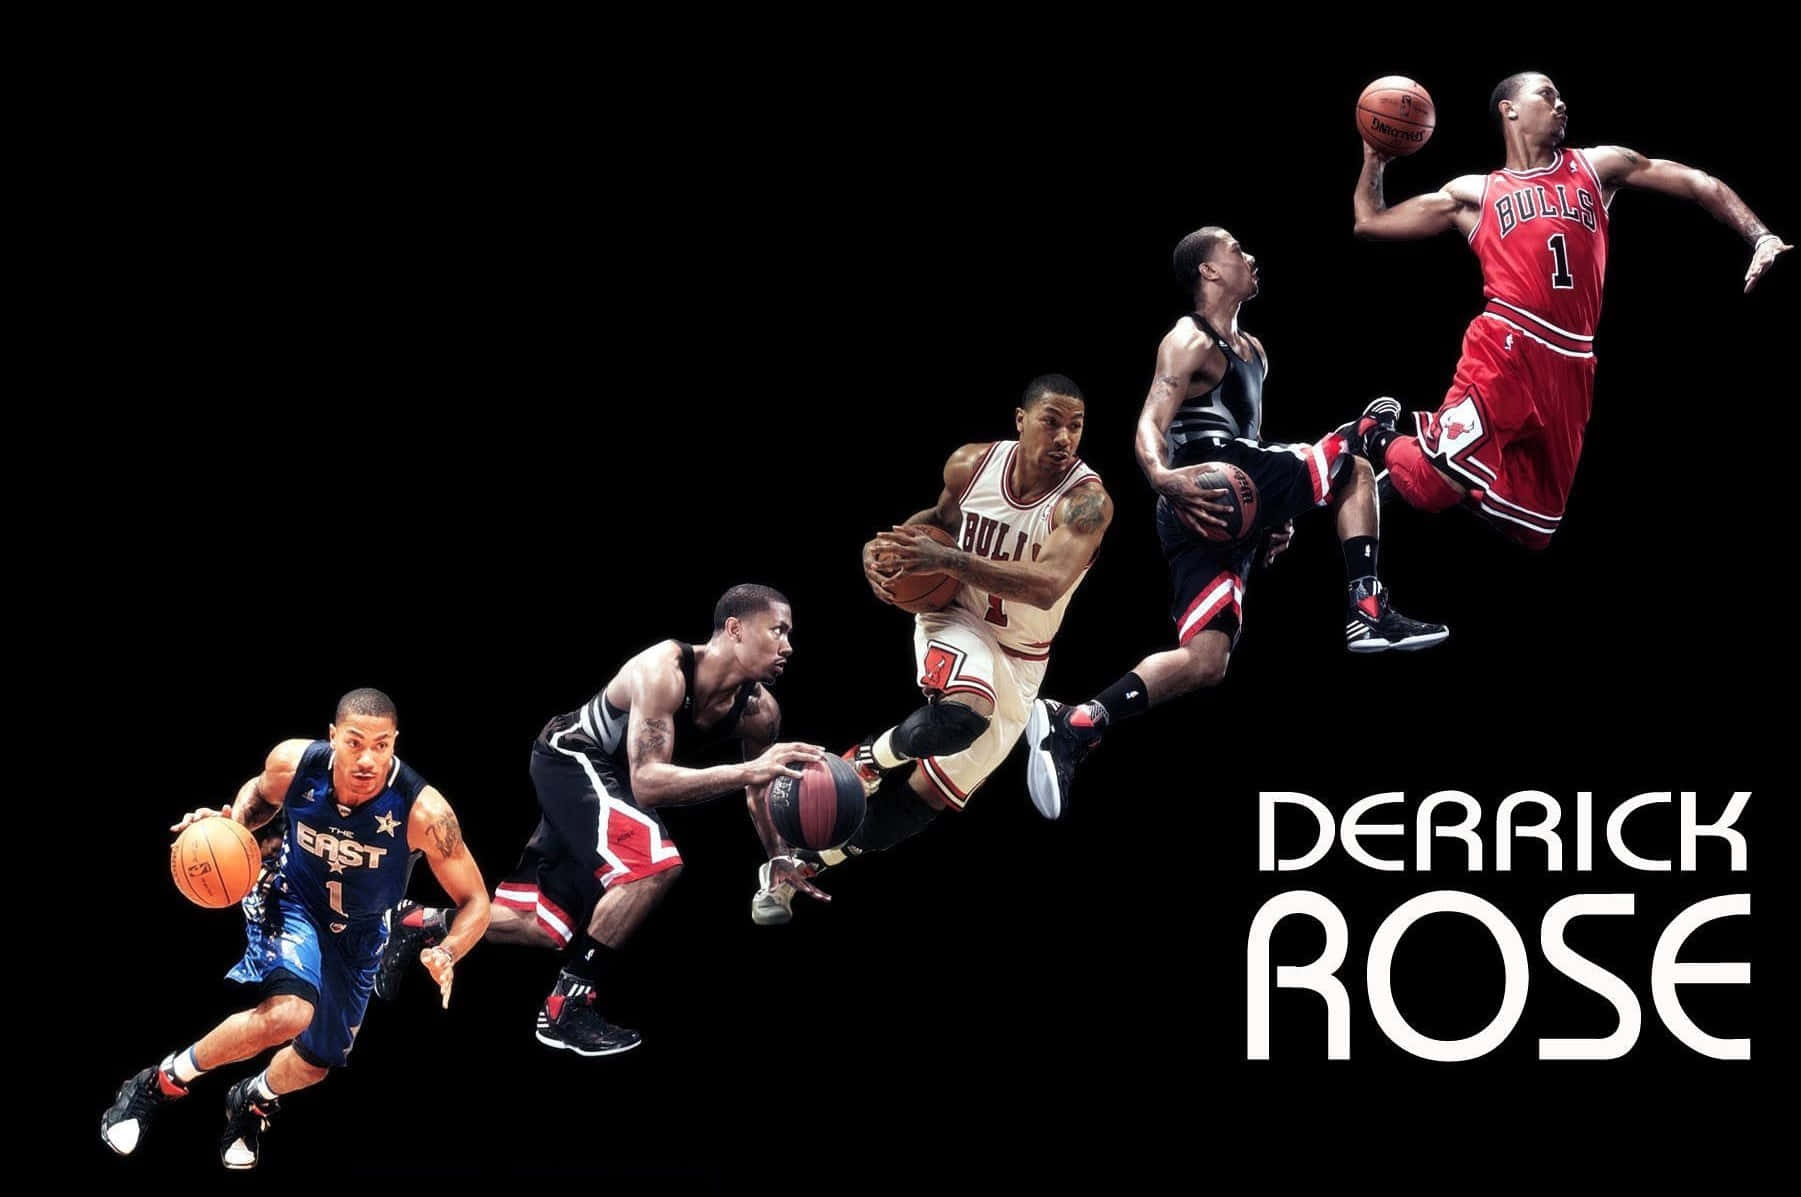 Derrick Rose 1080P, 2K, 4K, 5K HD wallpapers free download